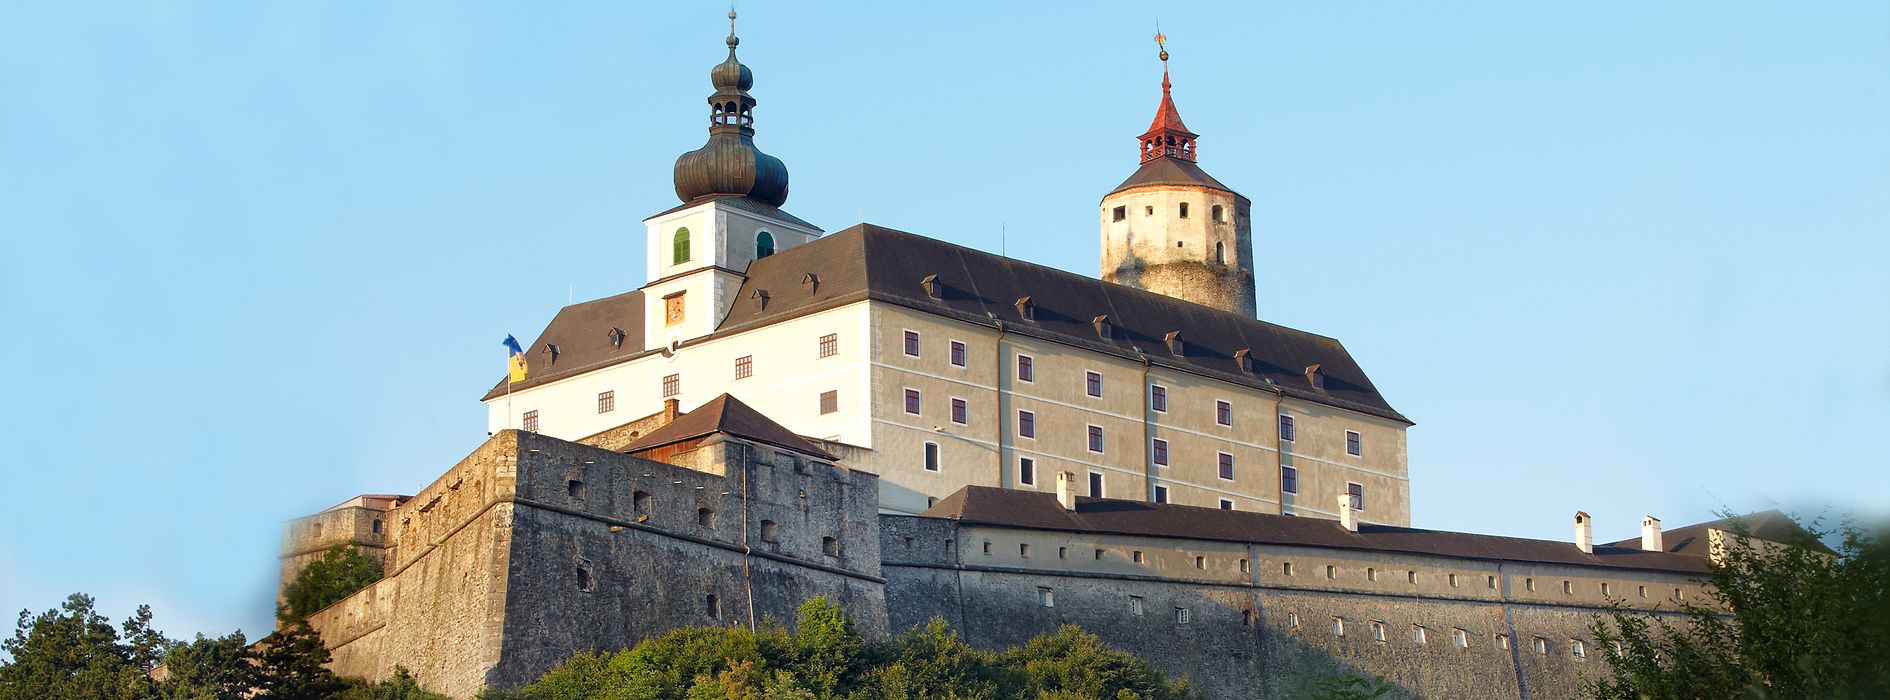 Castello di Forchtenstein